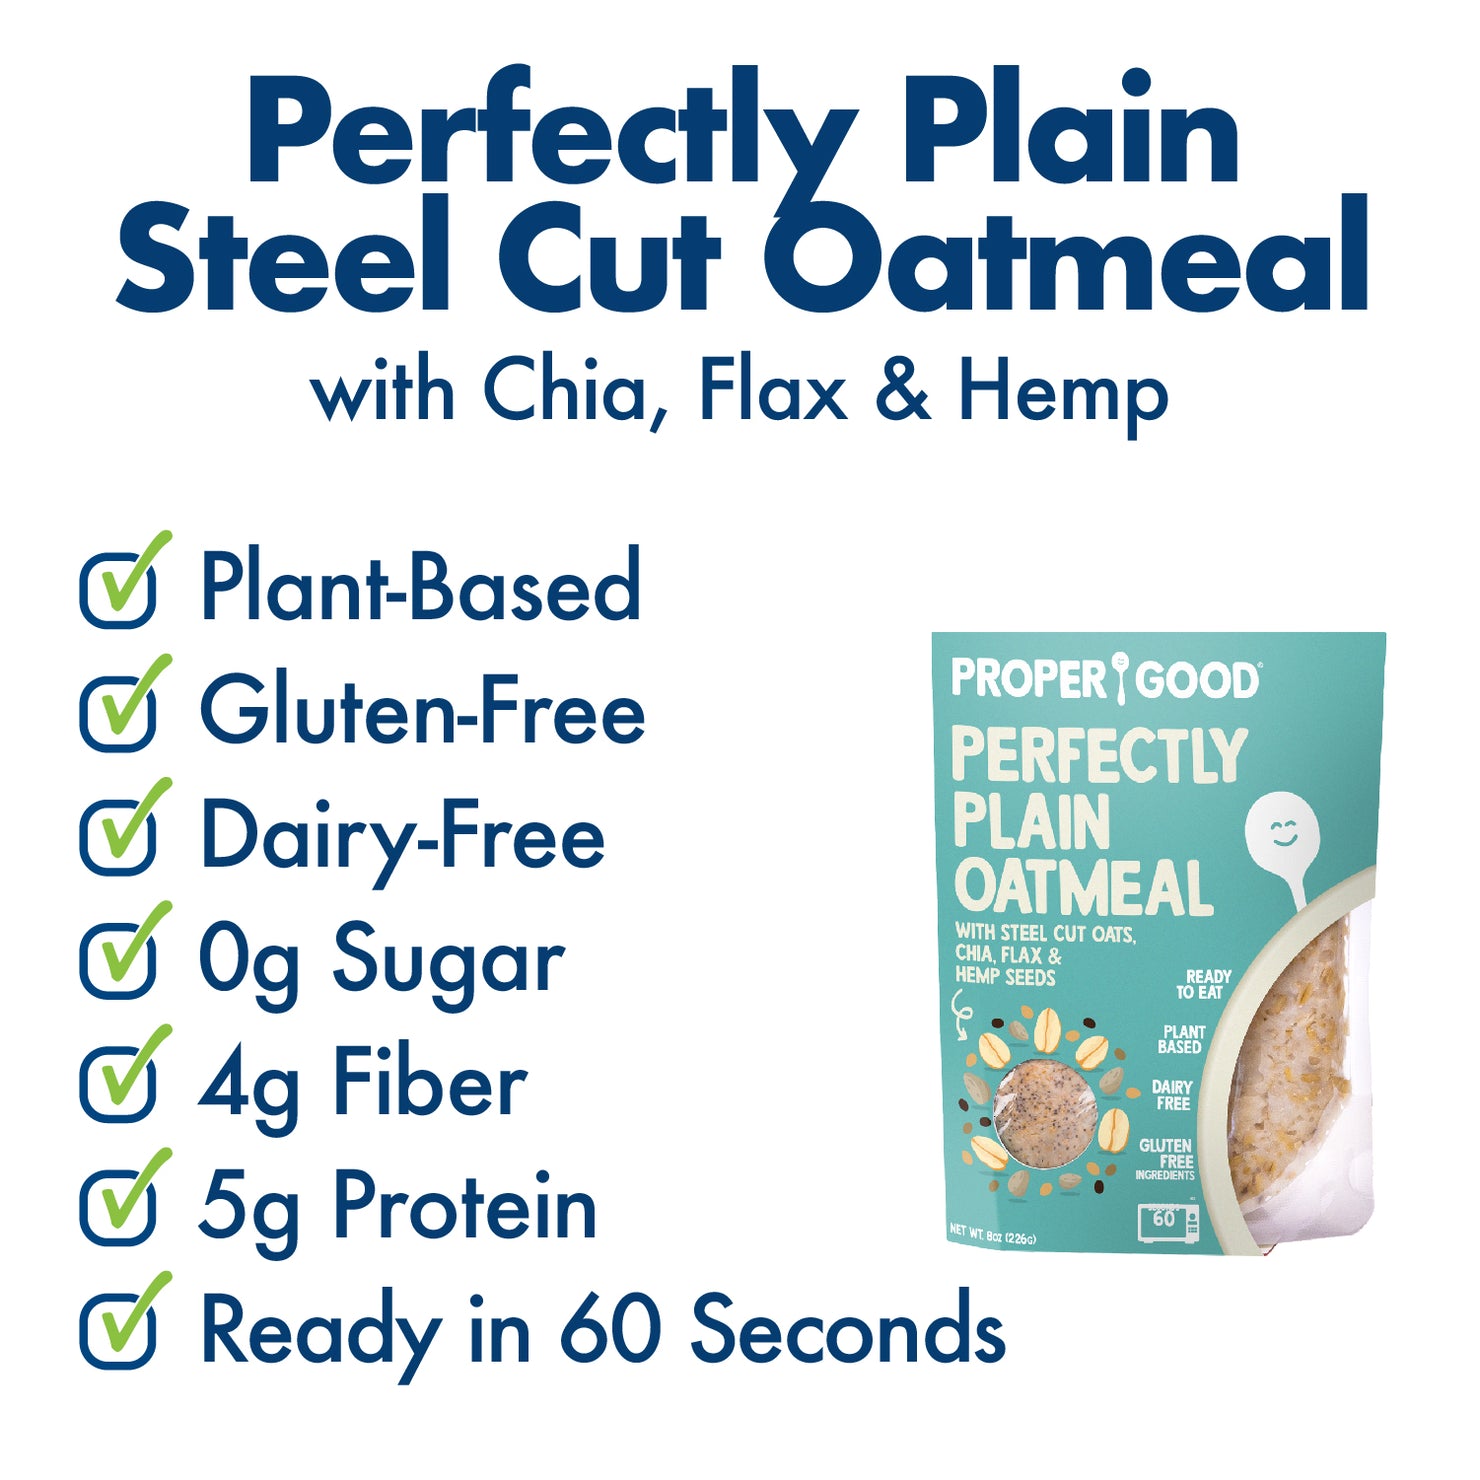 Perfectly Plain Steel Cut Oatmeal Benefits - Eat Proper Good